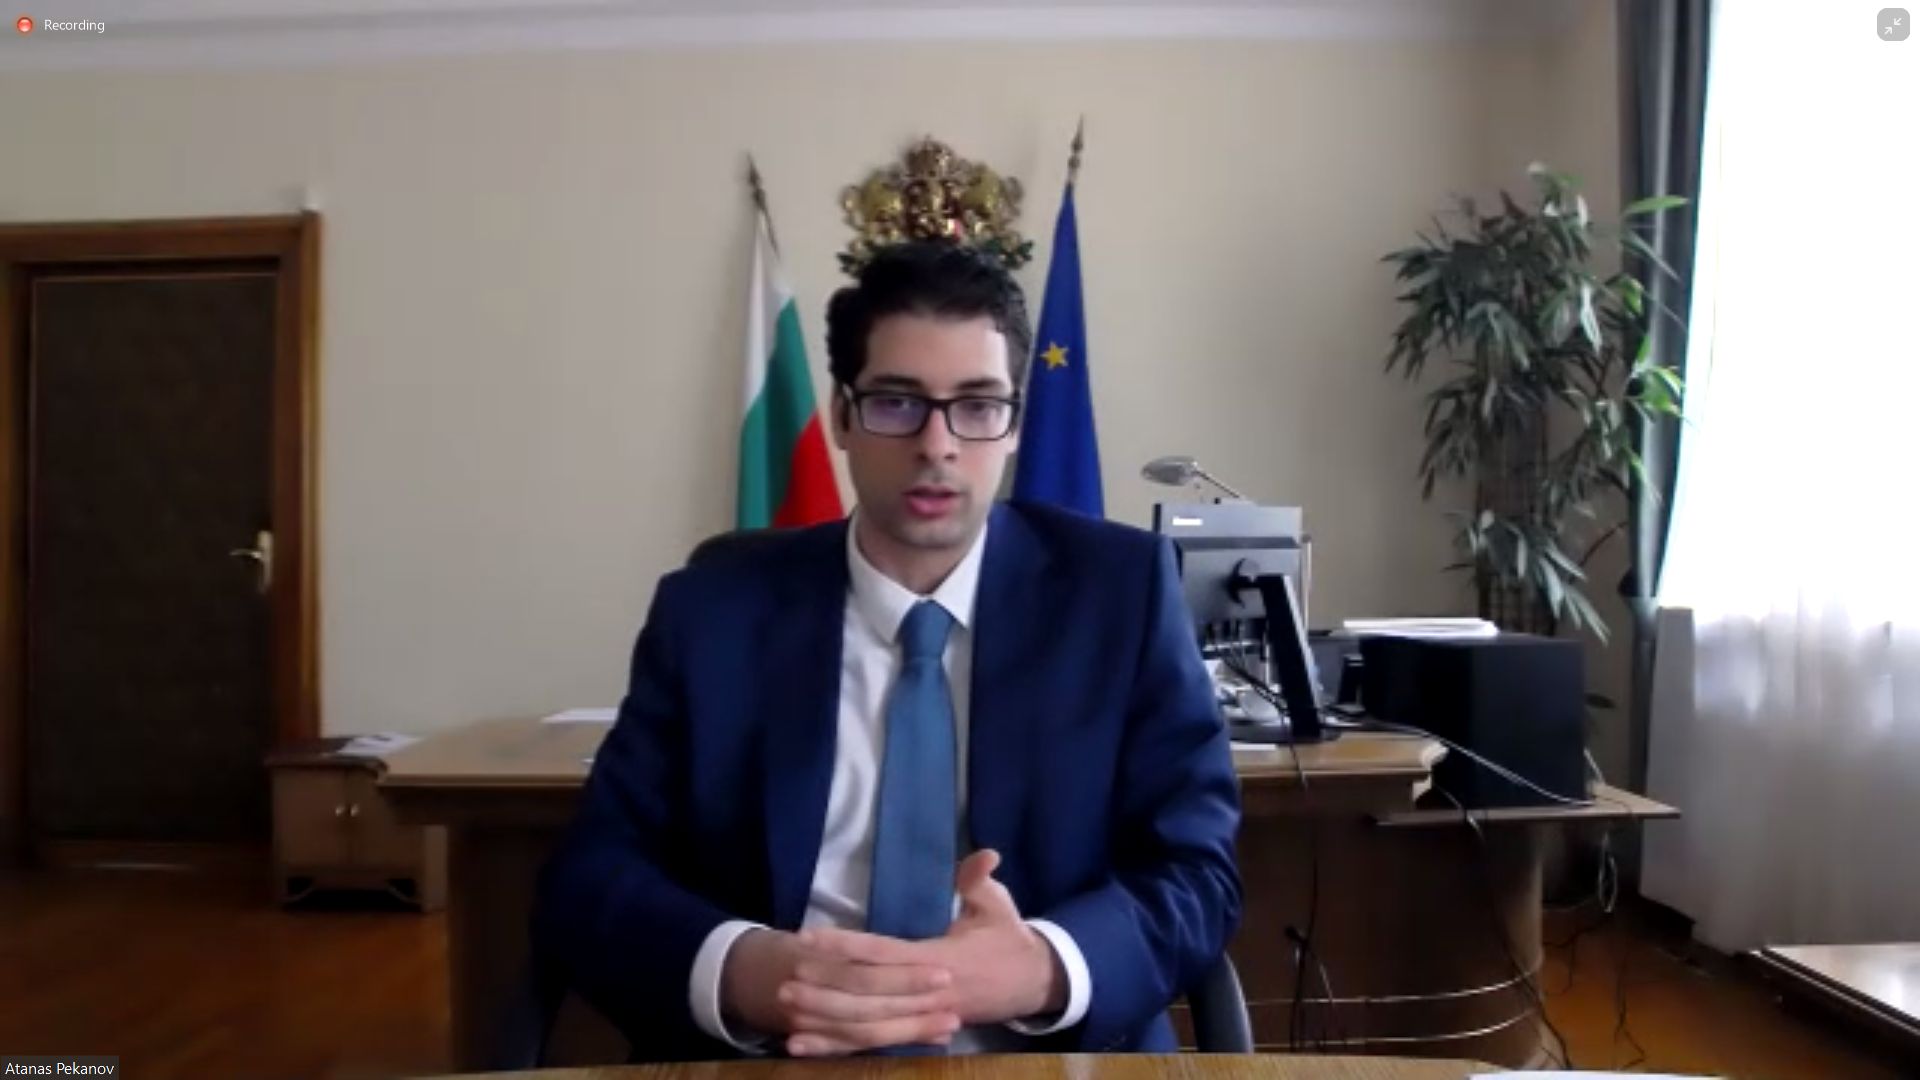 Βούλγαρος αντιπρόεδρος κυβέρνησης: «Την Ευρώπη την περιμένουν τρεις πολύ δύσκολοι χειμώνες»